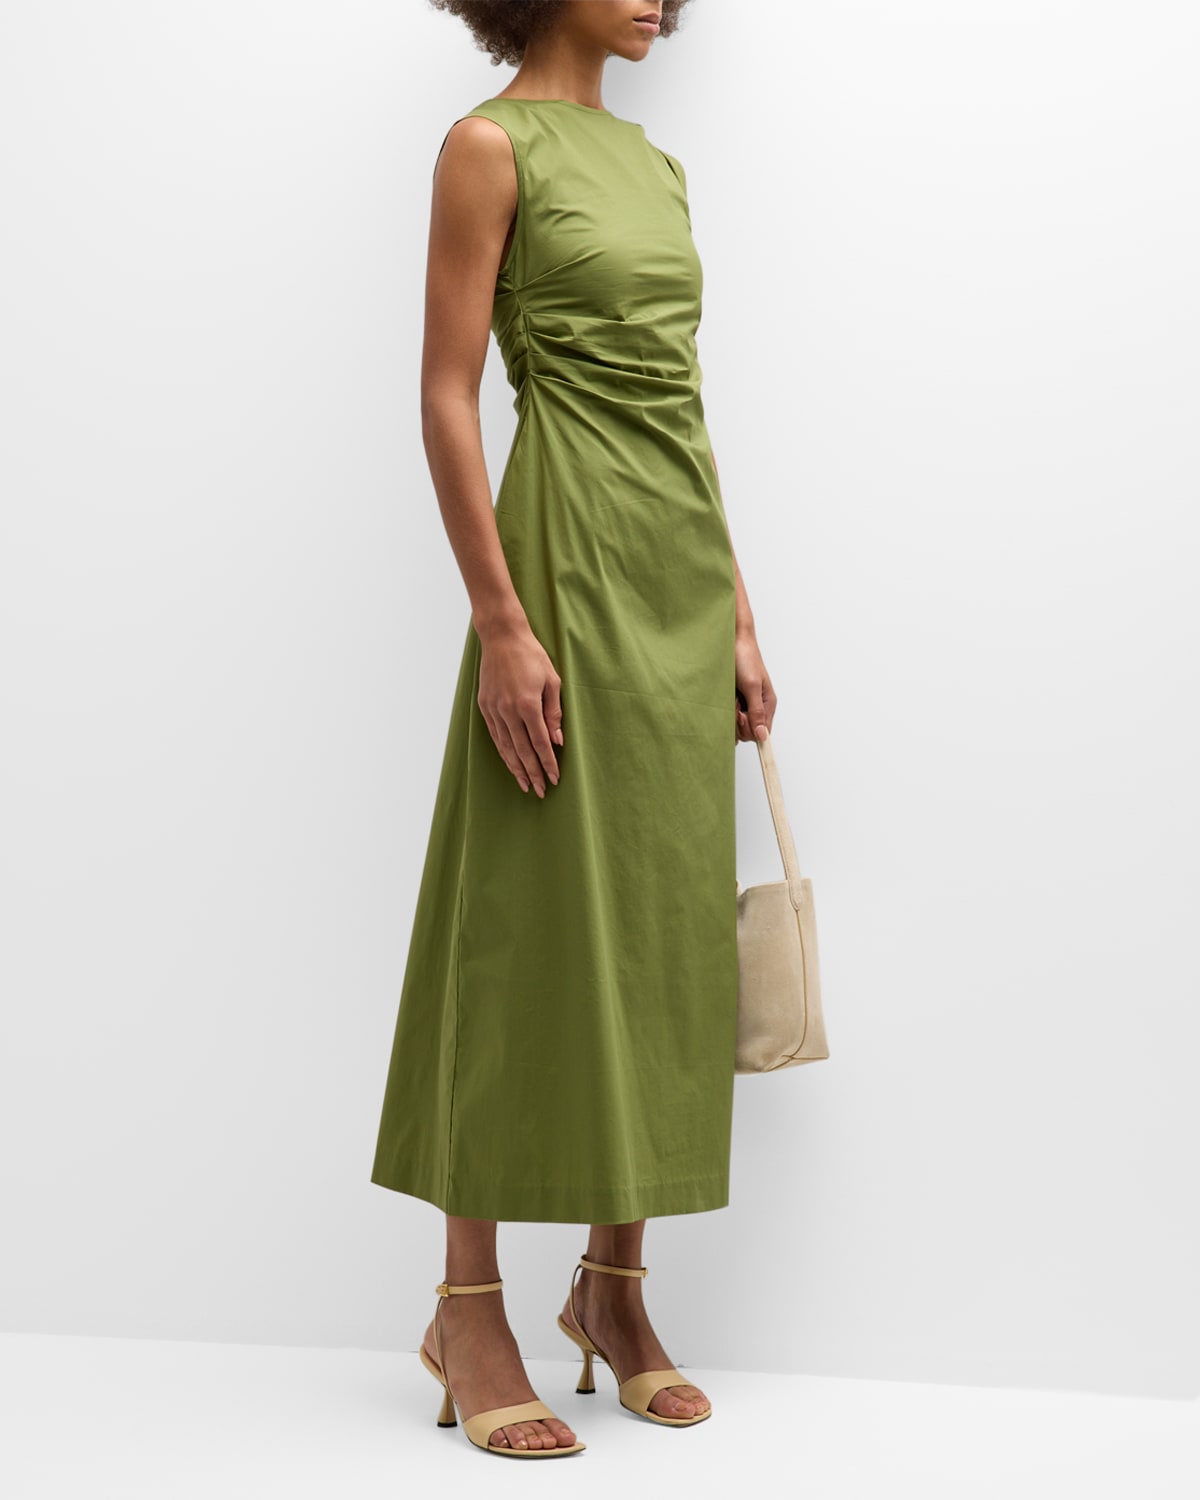 Wynn Hamlyn Monica High-neck Gathered A-line Maxi Dress In Olive Green